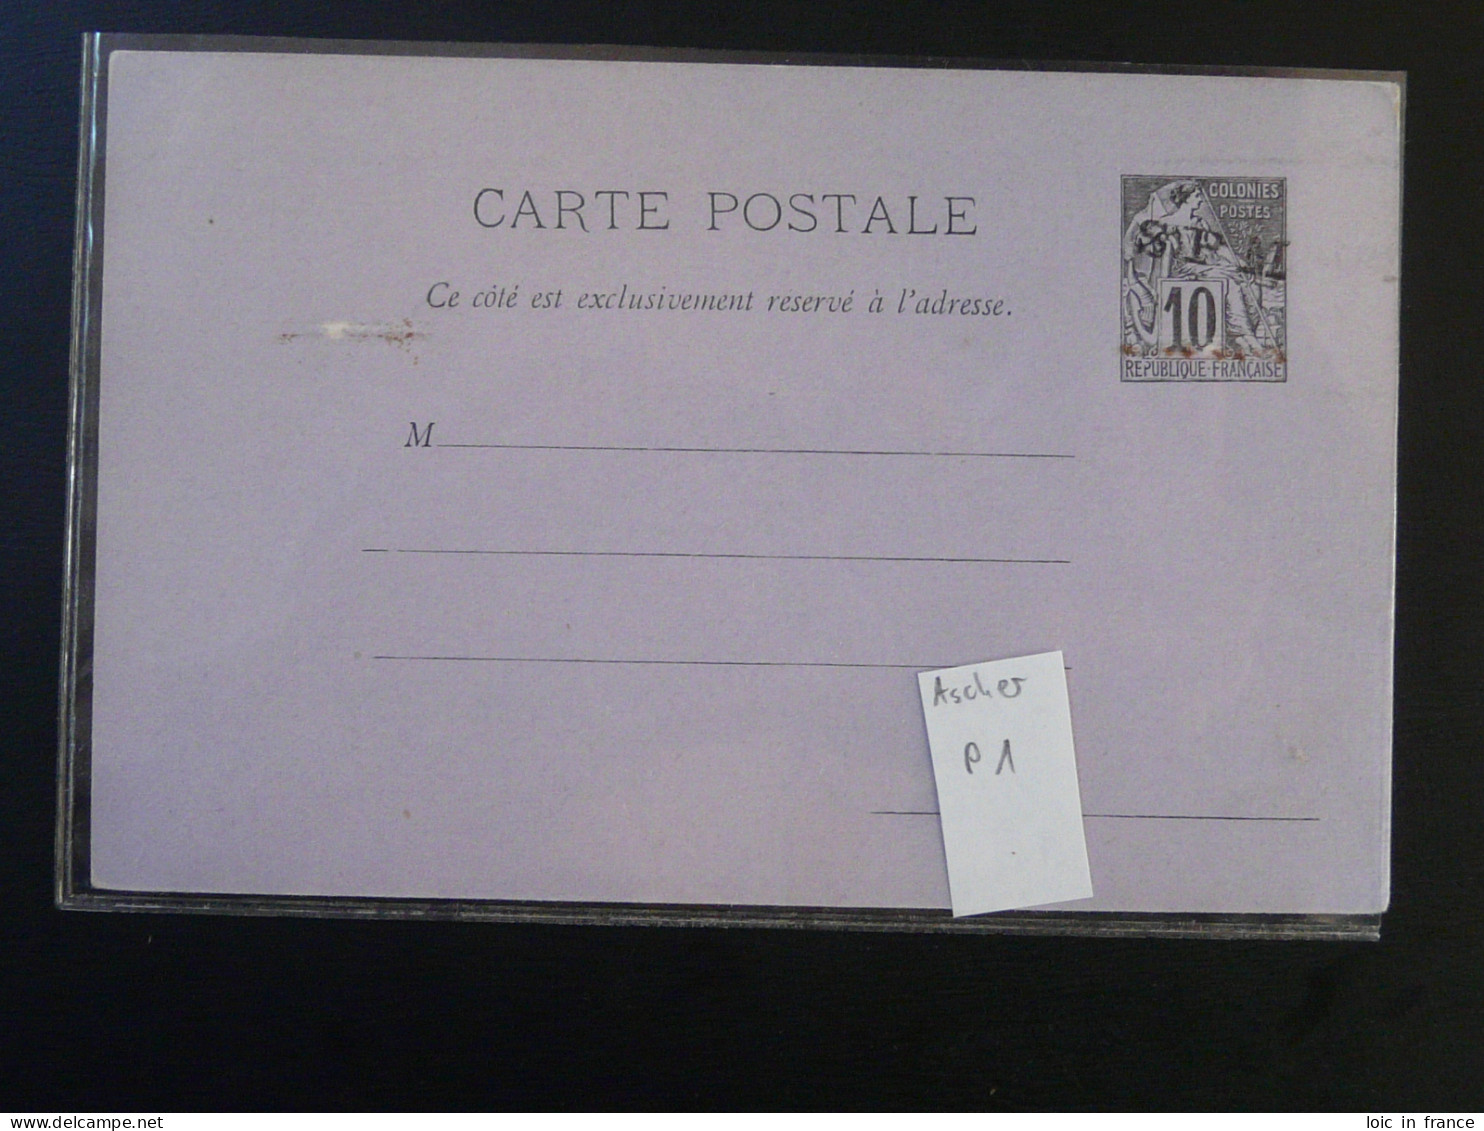 Entier Postal Carte Postale Alphée Dubois 10c Noir Sur Lilas N°1 St-Pierre Et Miquelon (ex 1) - Postal Stationery